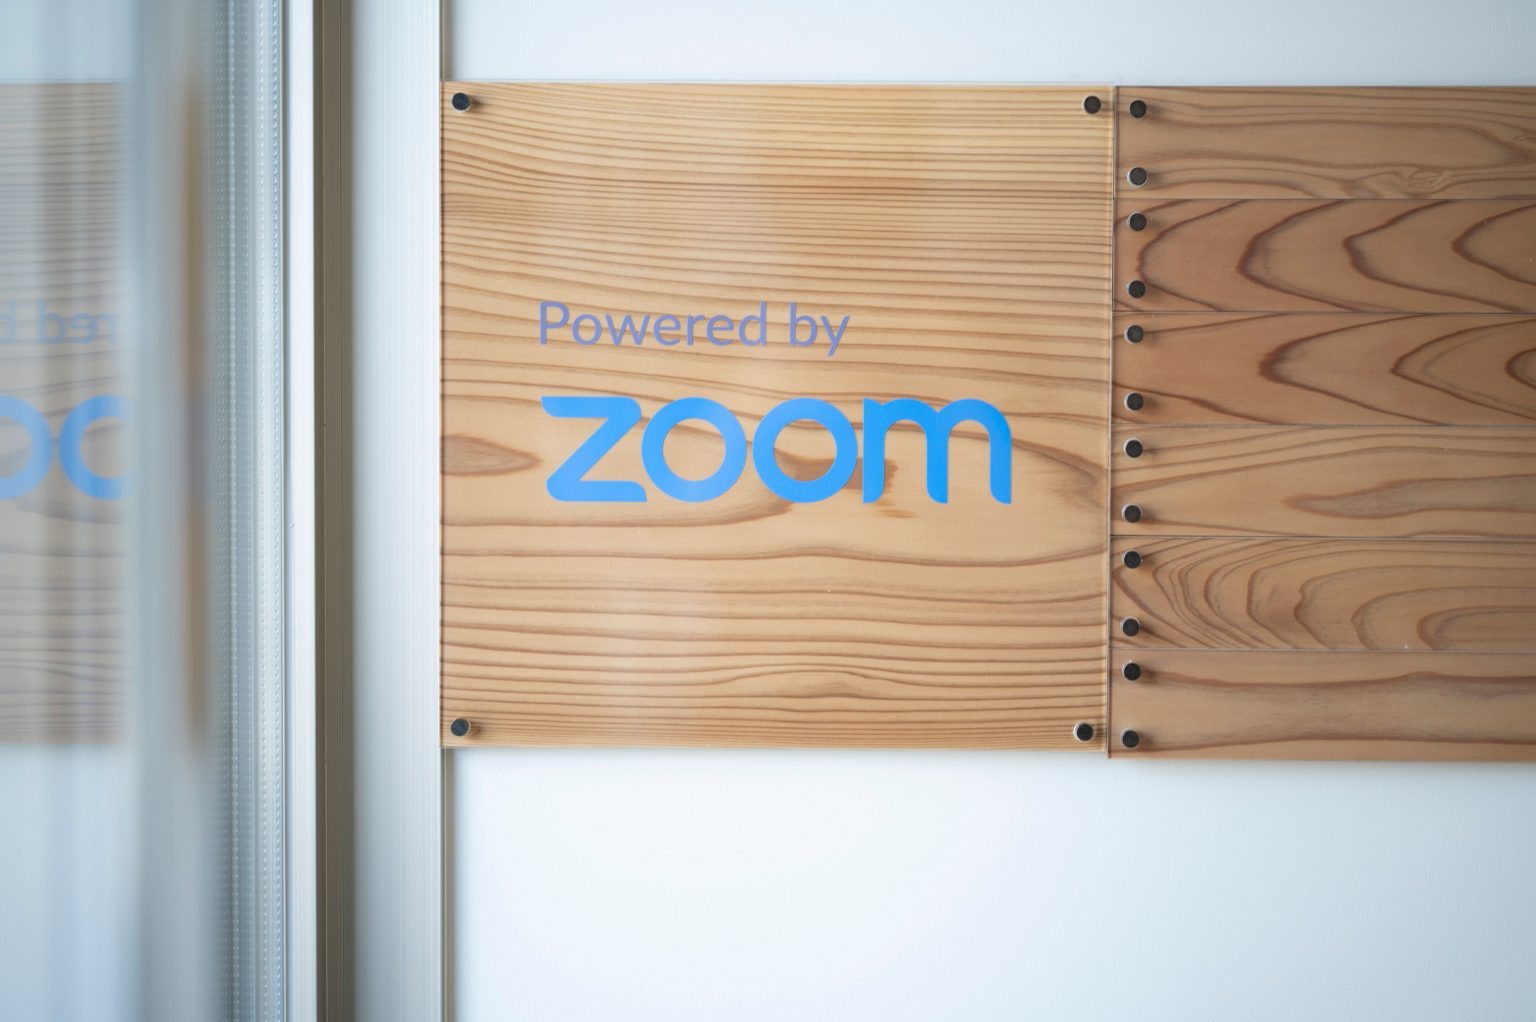 入り口には、ZVC が全面的に監修したことを示す「Powered by Zoom」の文字